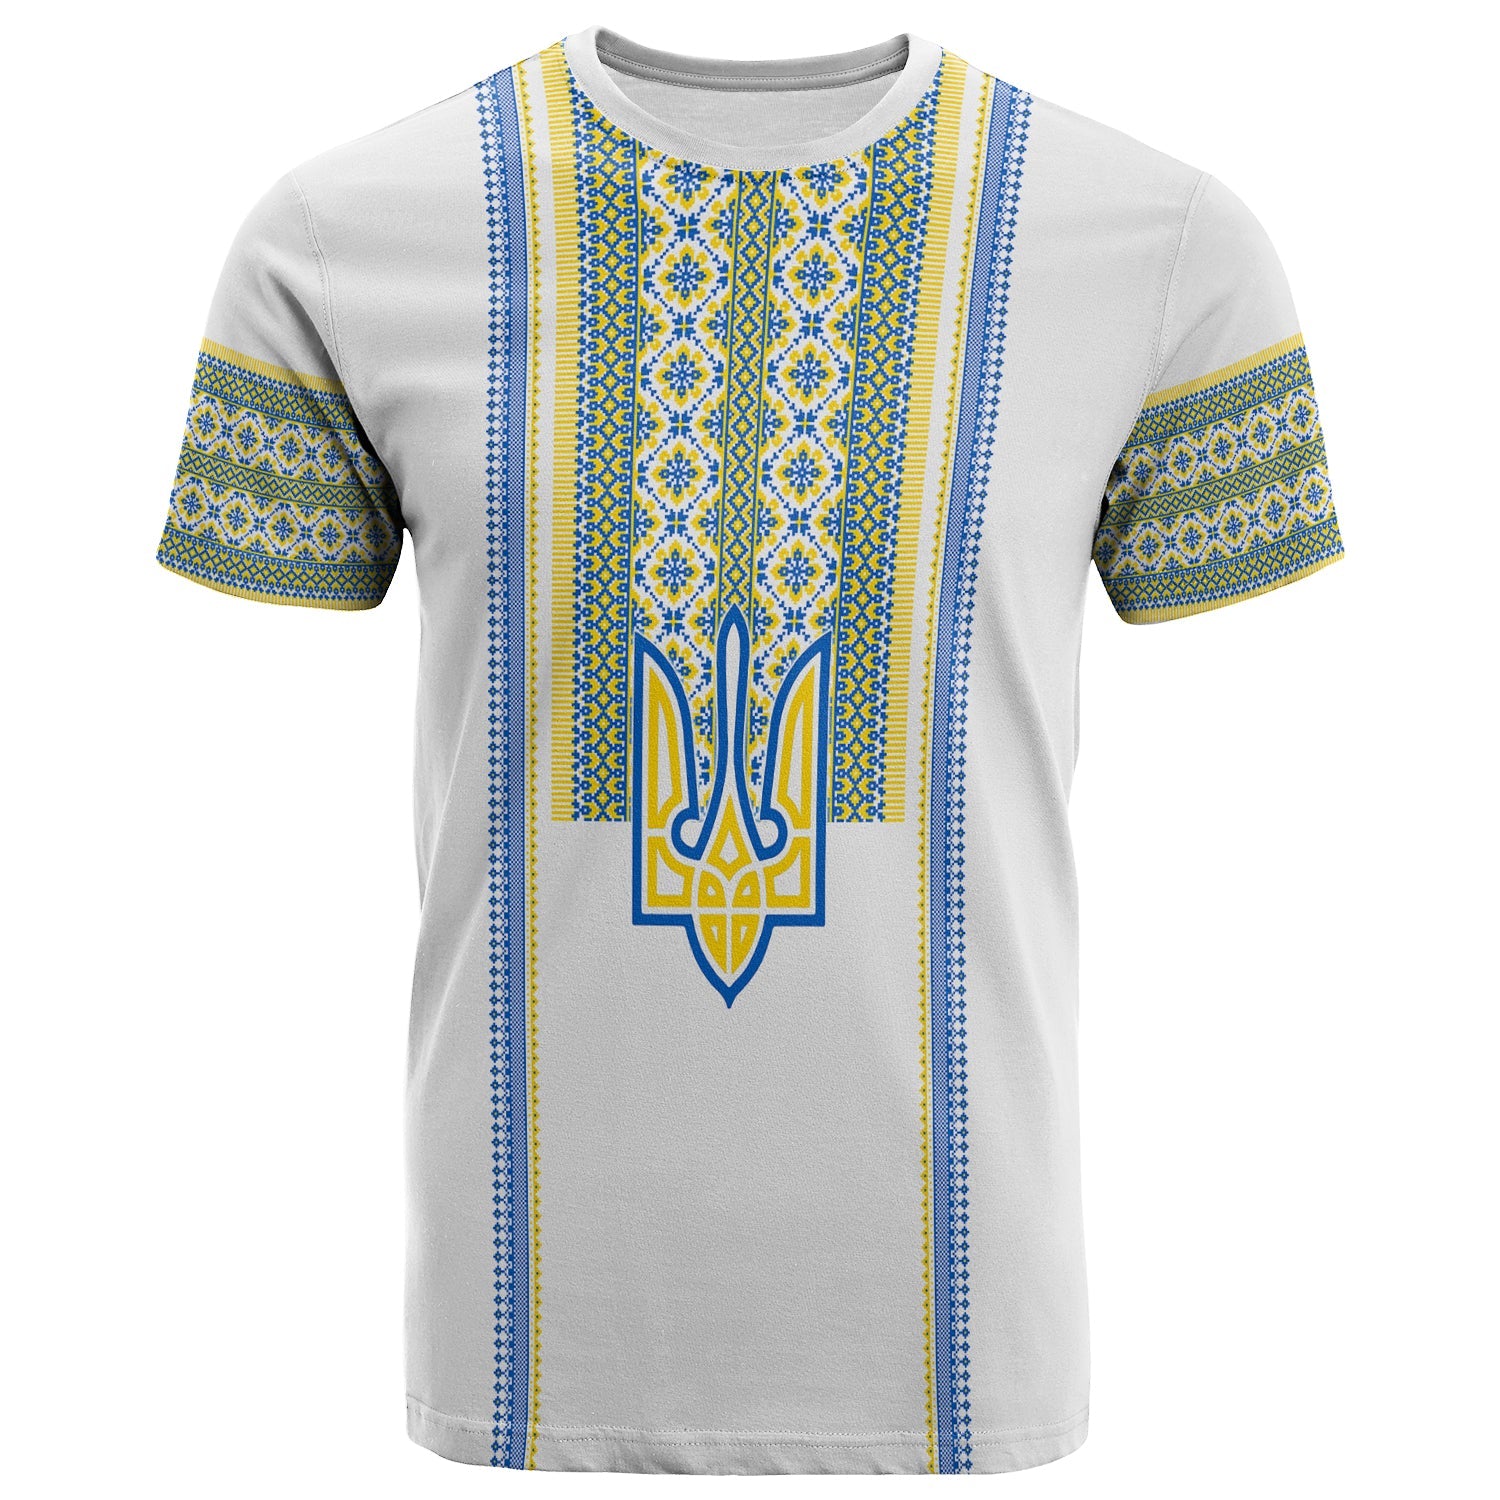 ukraine-vyshyvanka-t-shirt-unity-day-white